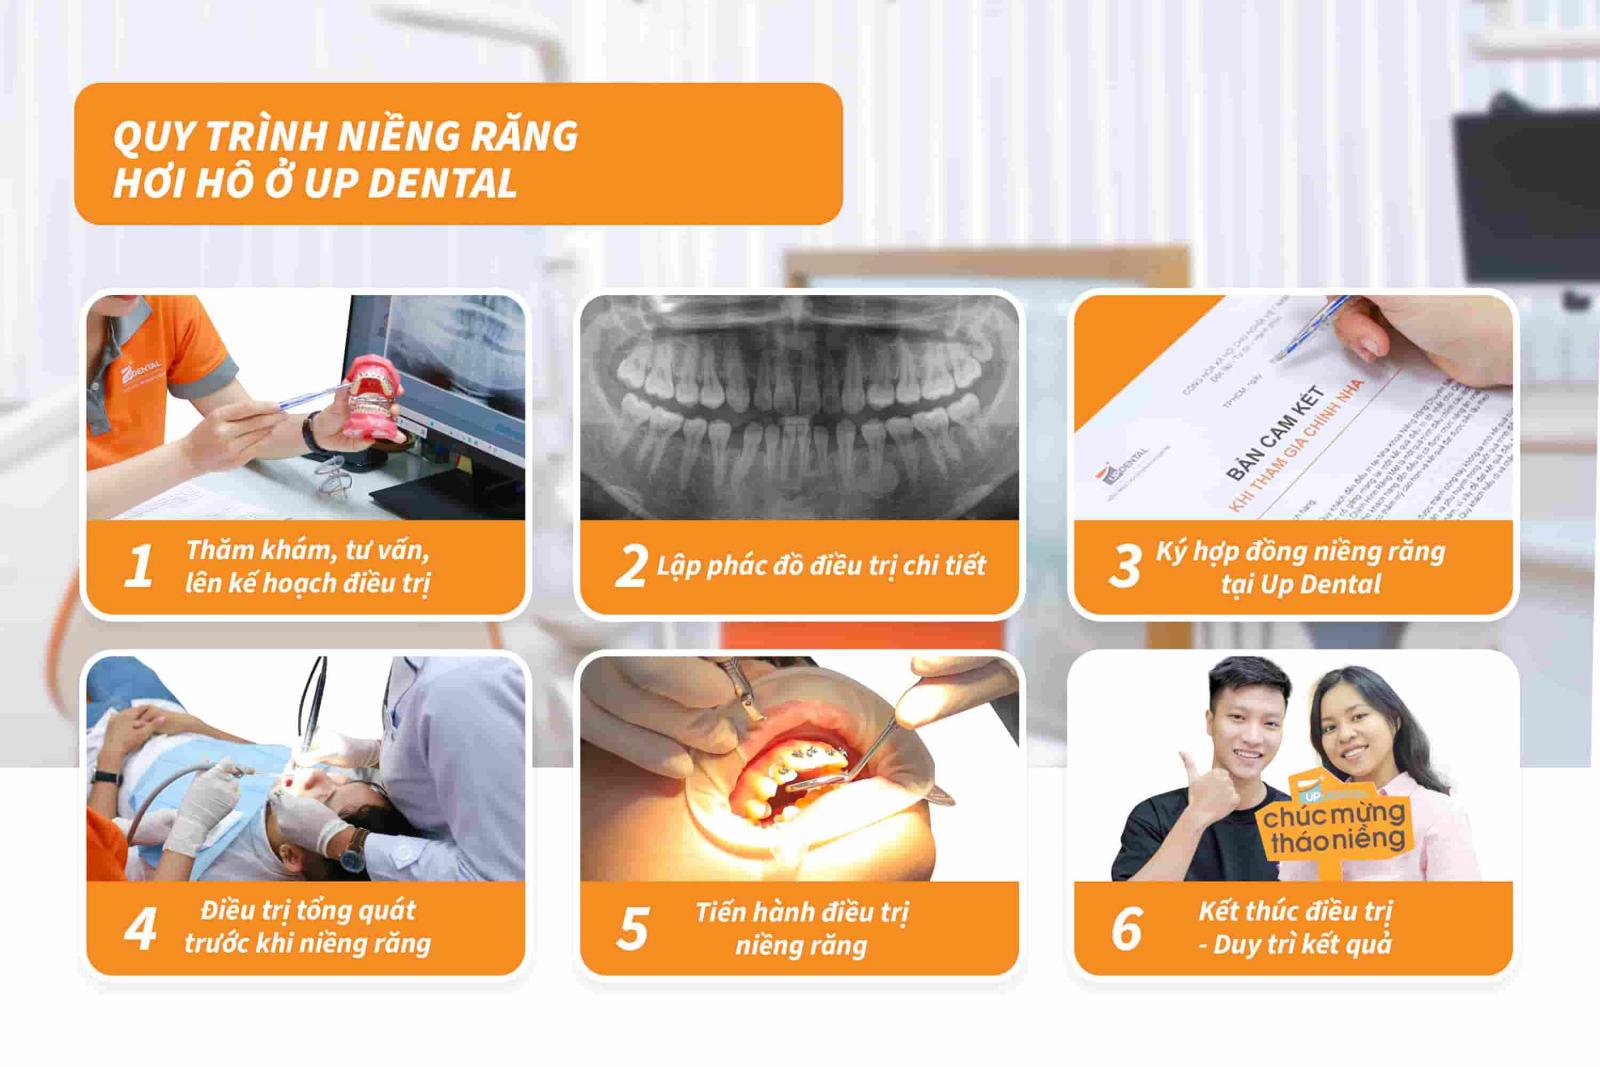 Quy trình niềng răng hơi hô ở Up Dental